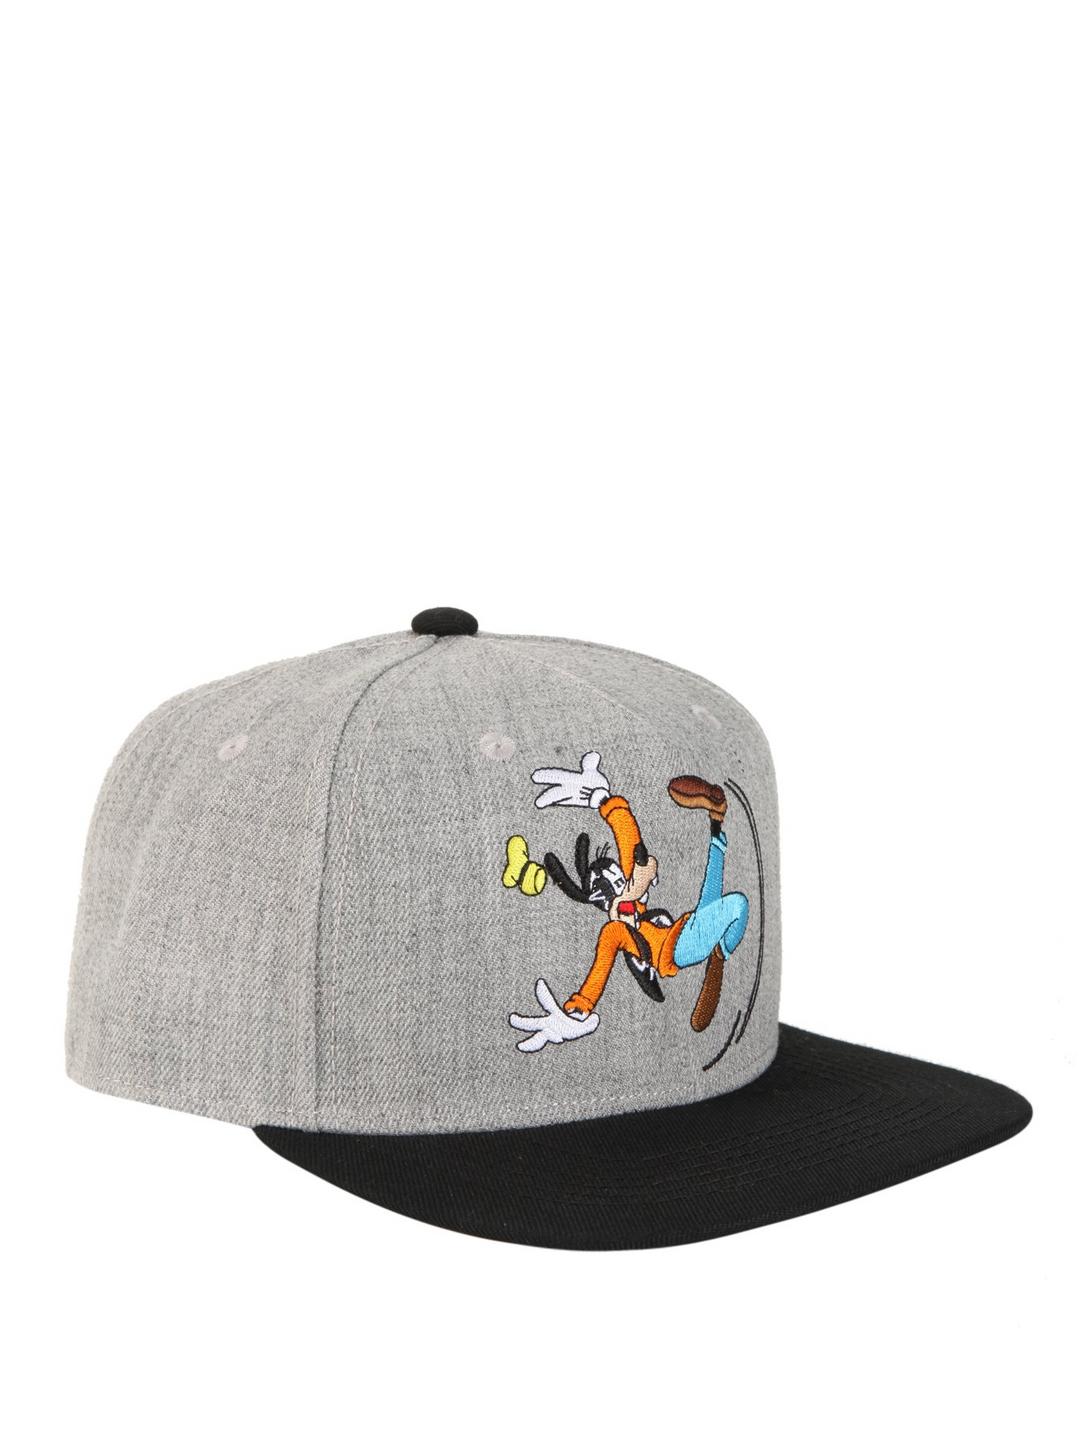 Disney Goofy Snapback Hat, , hi-res